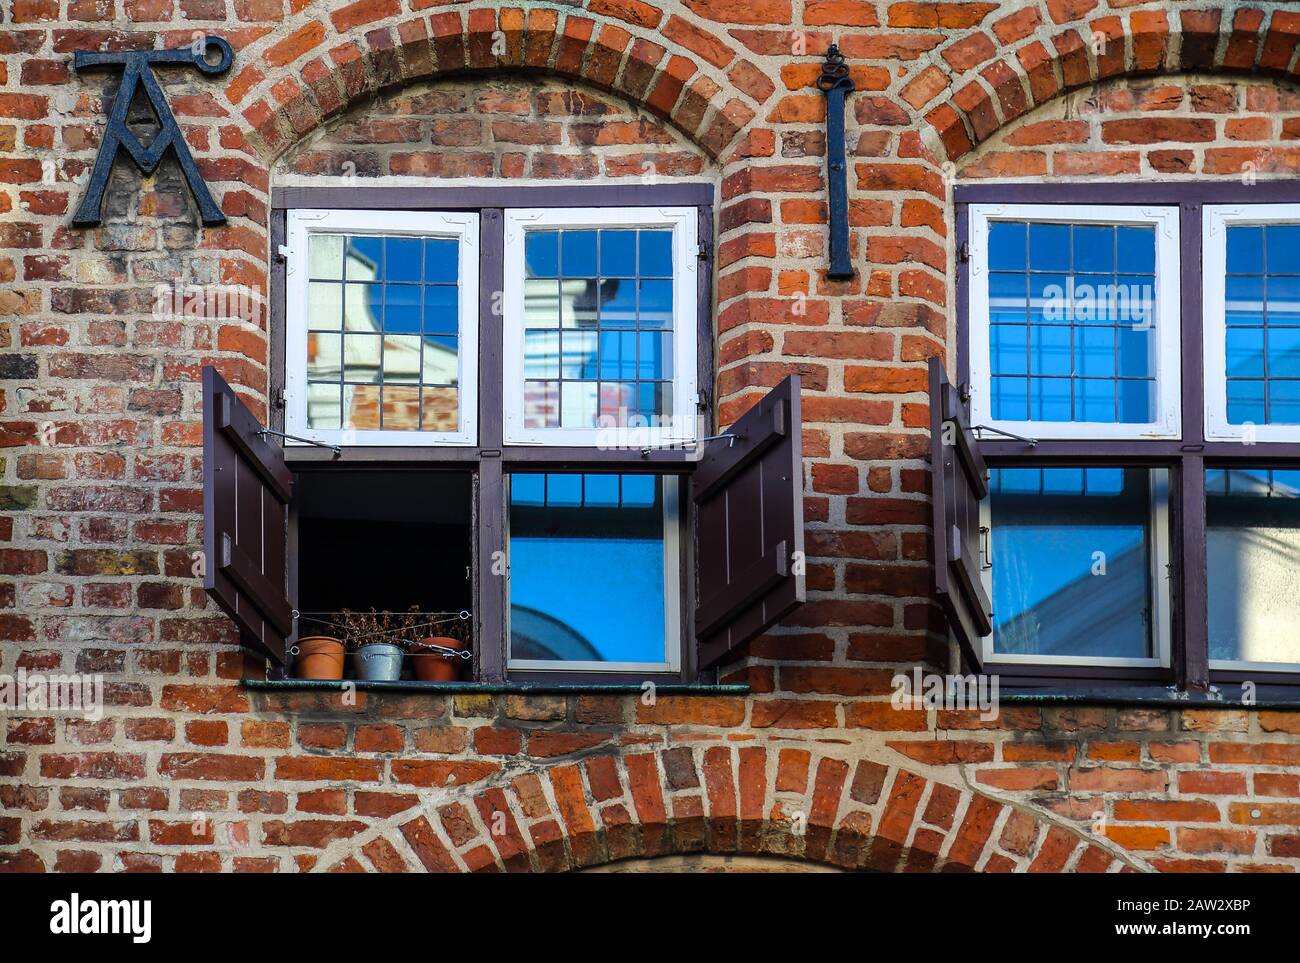 Die liebevoll gestaltete Fassade mit den offenen Fensterläden gehört zum historischen Stadtkern der Hansestadt Lübeck. Stockfoto